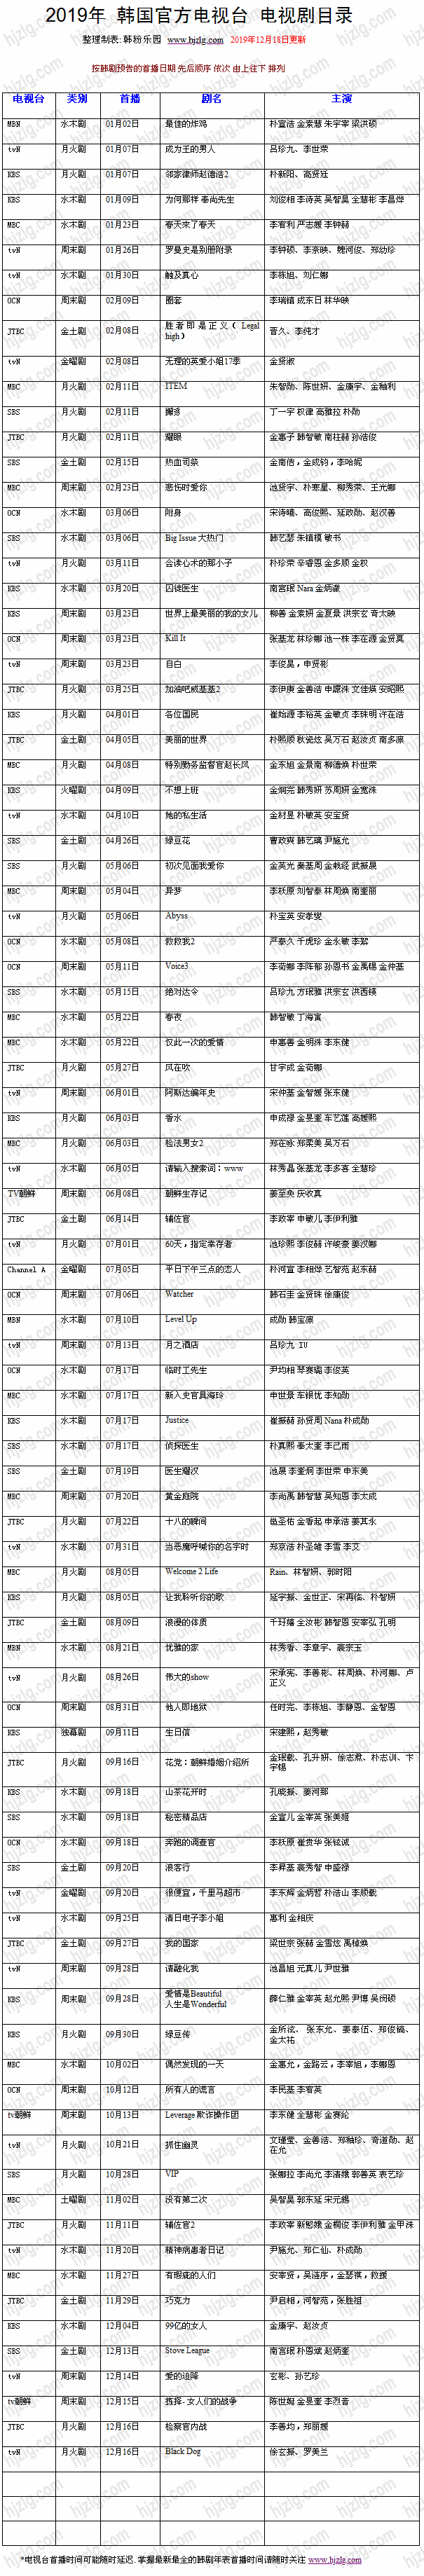 2019 年韩国官方电视剧目录(12月18日更新)